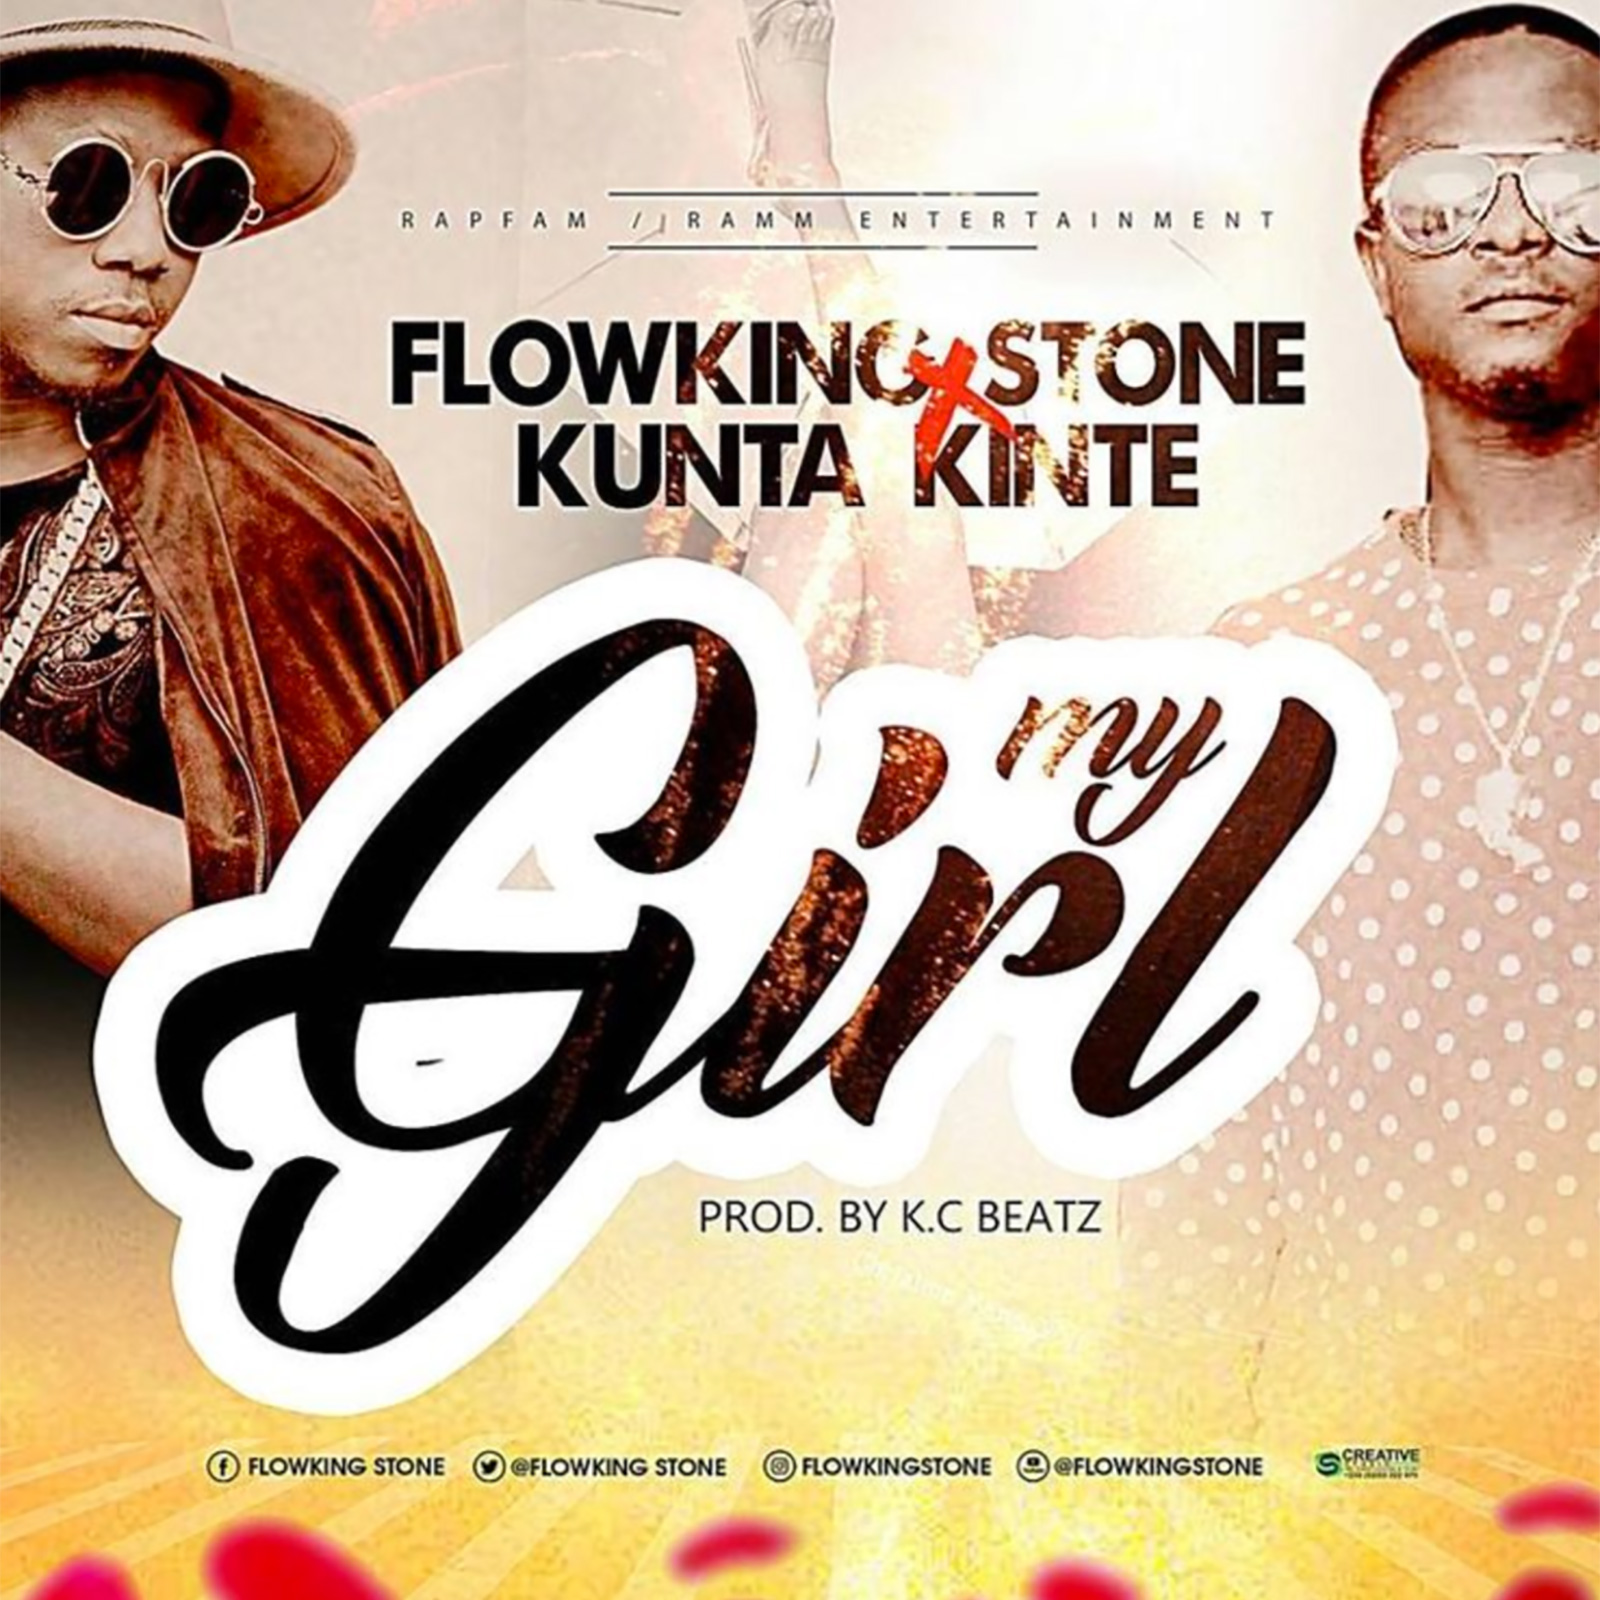 My Girl by Flowking Stone feat. Kunte Kinte